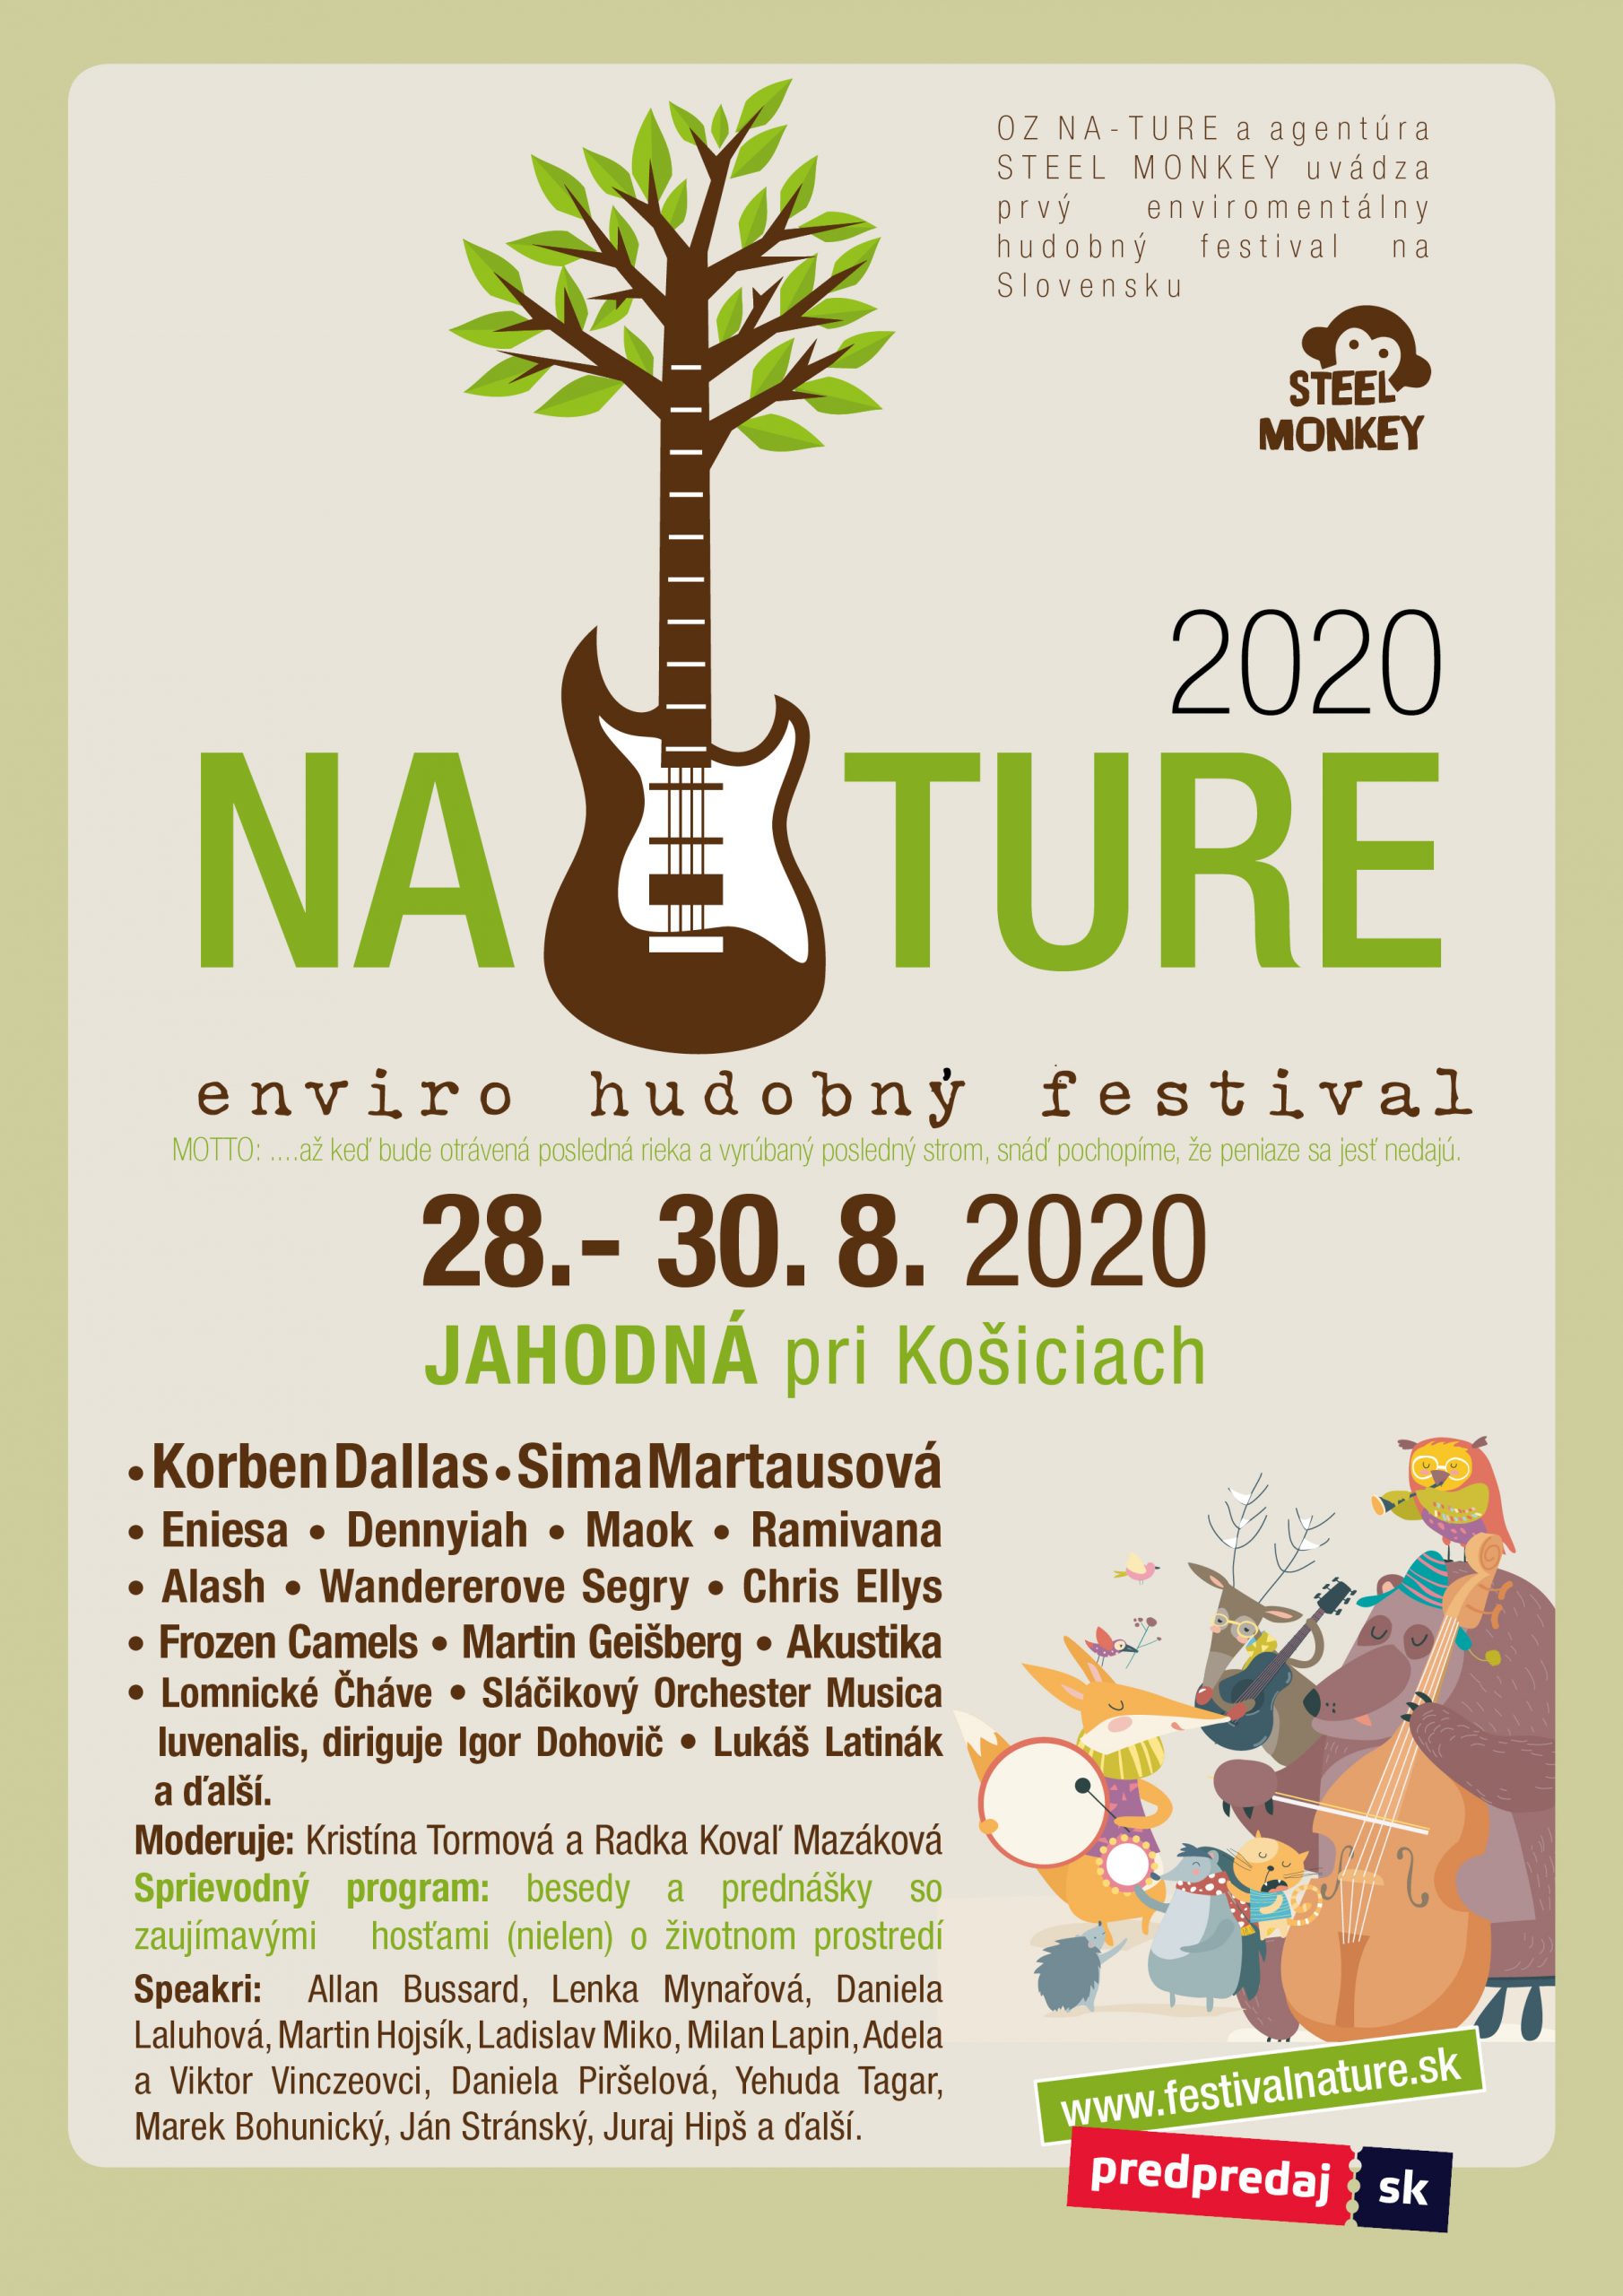 Enviro – hudobný festival NATURE sa kvôli koronavírusu presúva na koniec prázdnin